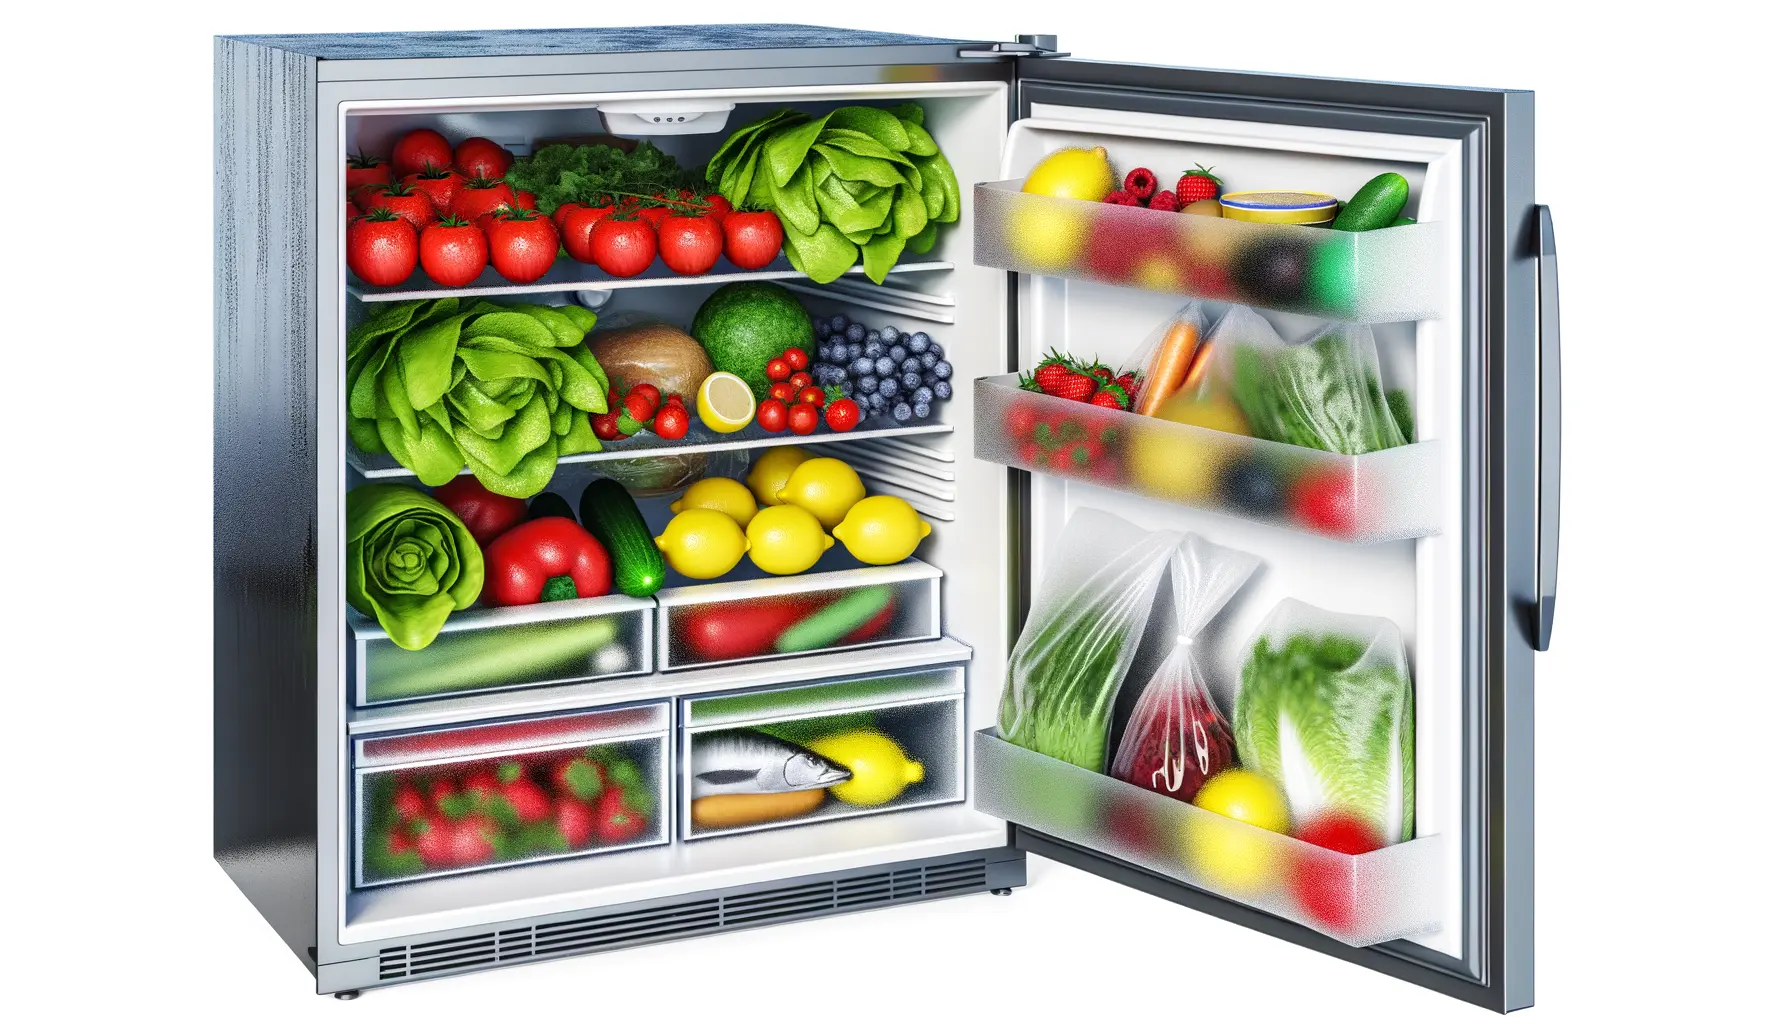 Innenaufnahme einer modernen Kühl-Gefrier-Kombination gefüllt mit frischen Lebensmitteln.